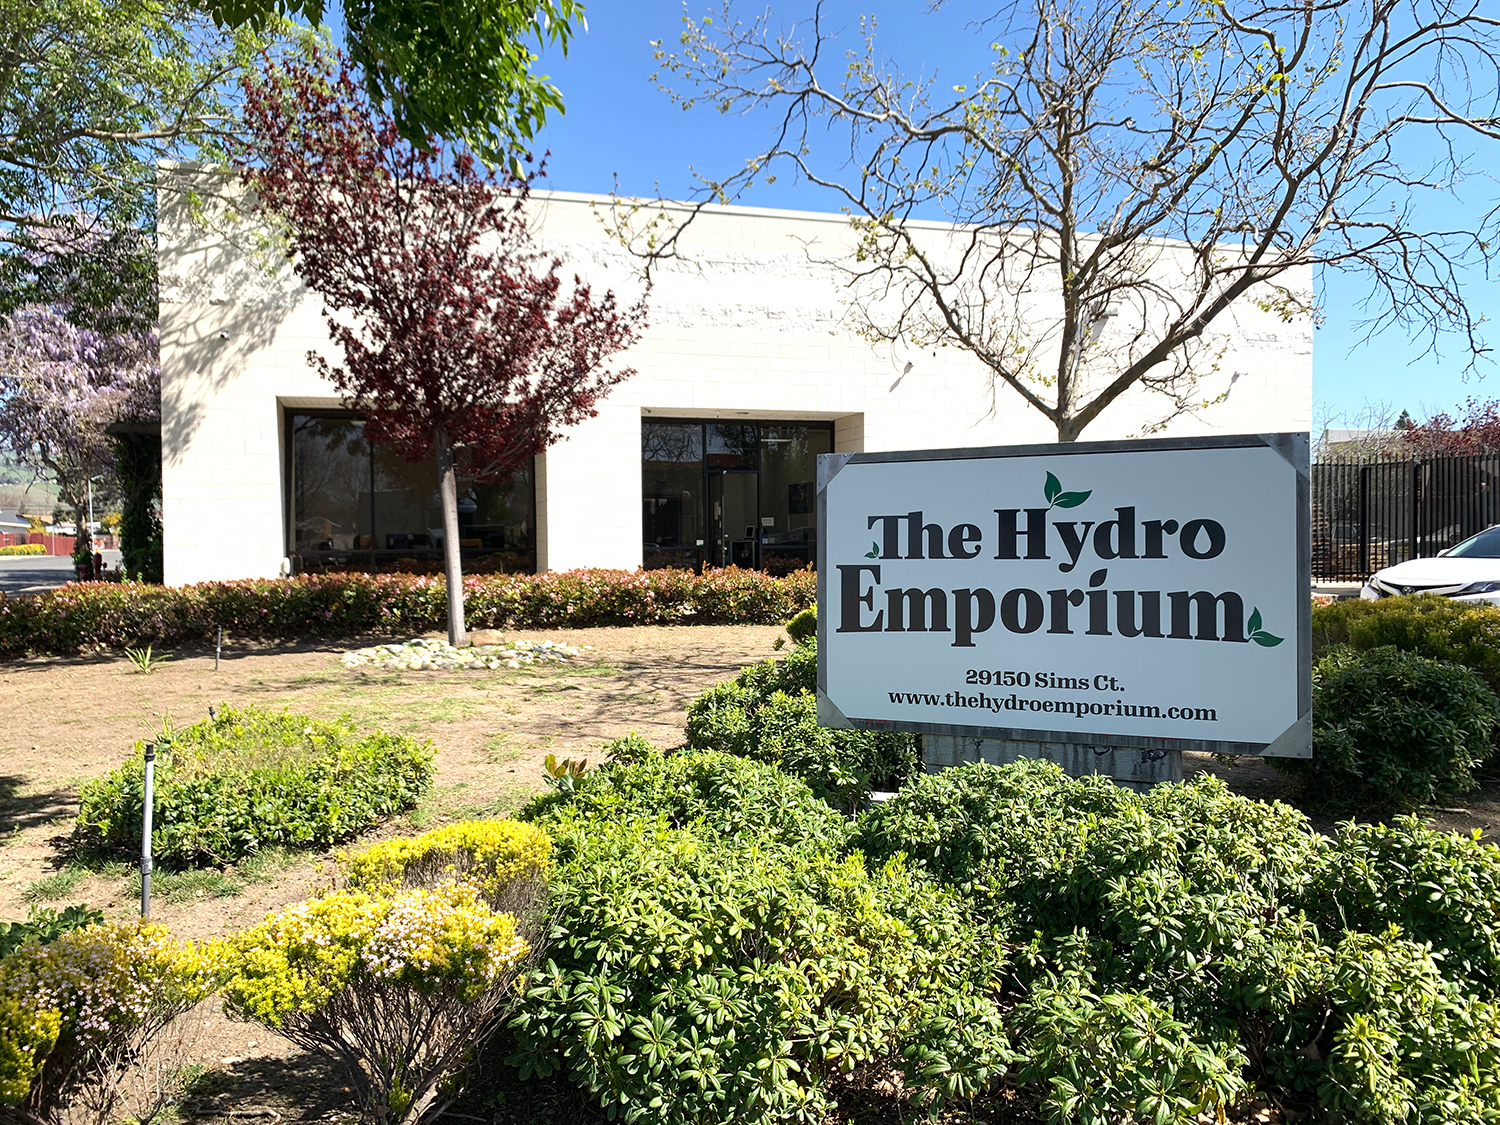 The Hydro Emporium store